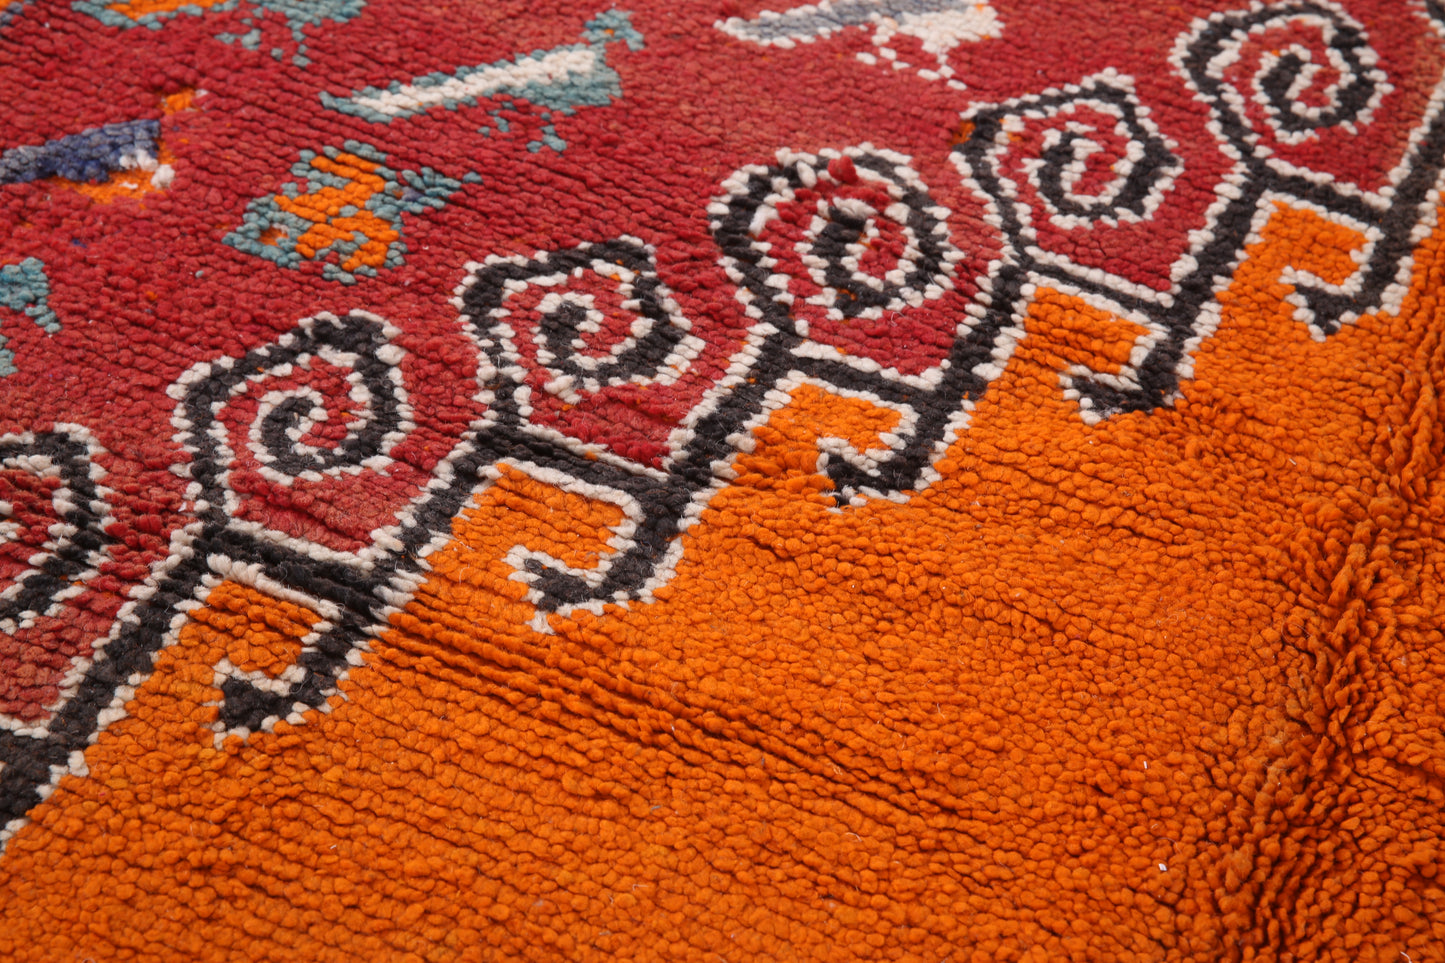 Vintage marokkanischer Teppich 5,8 FT x 10,2 FT - Vintage marokkanischer Teppich - handgemachter Wollteppich - 80er Jahre Teppich - alter Boho Teppich - oranger und roter Tribal Teppich